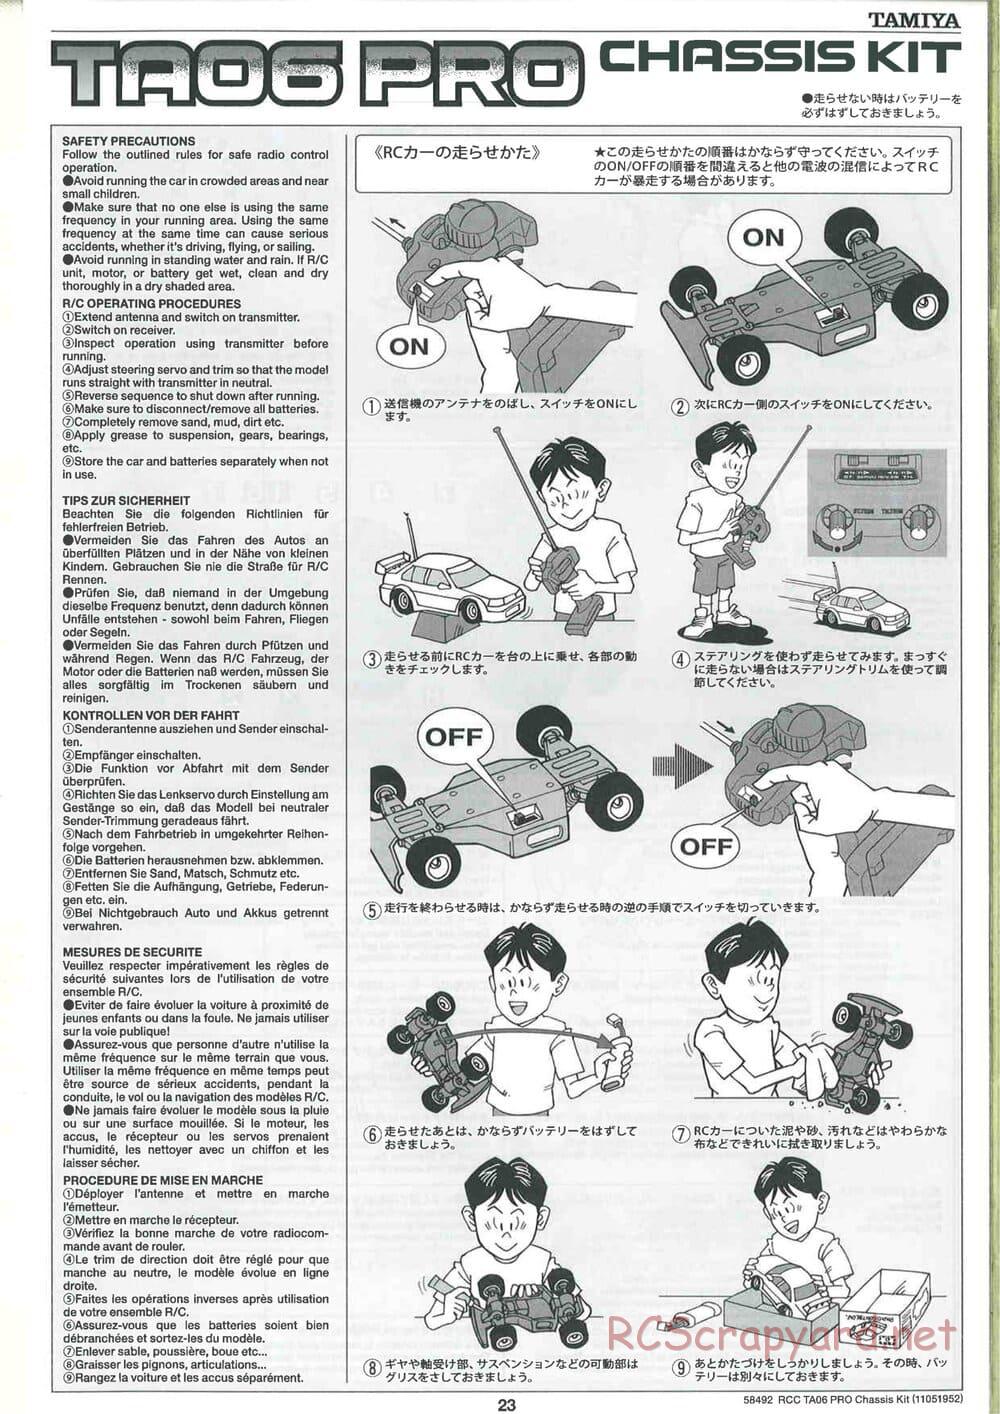 Tamiya - TA06 Pro Chassis - Manual - Page 23